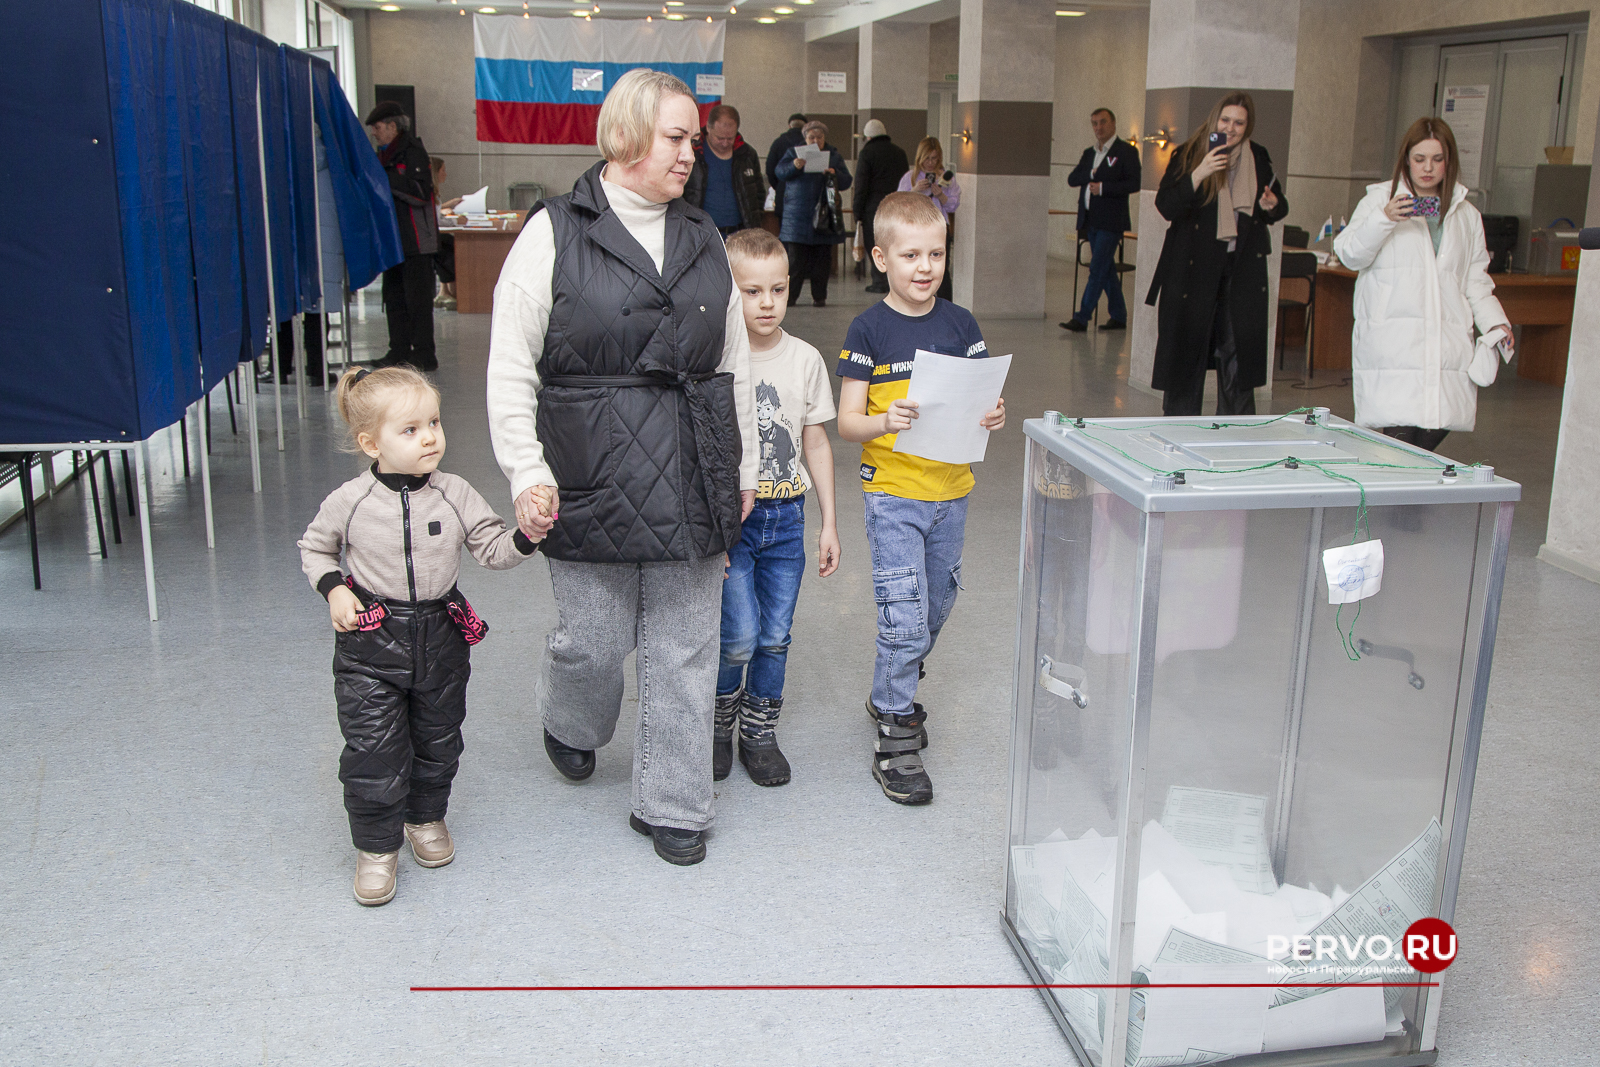 Первоуральцы принимают участие в выборах Президента Российской Федерации семьями – с детьми, внуками, родителями.